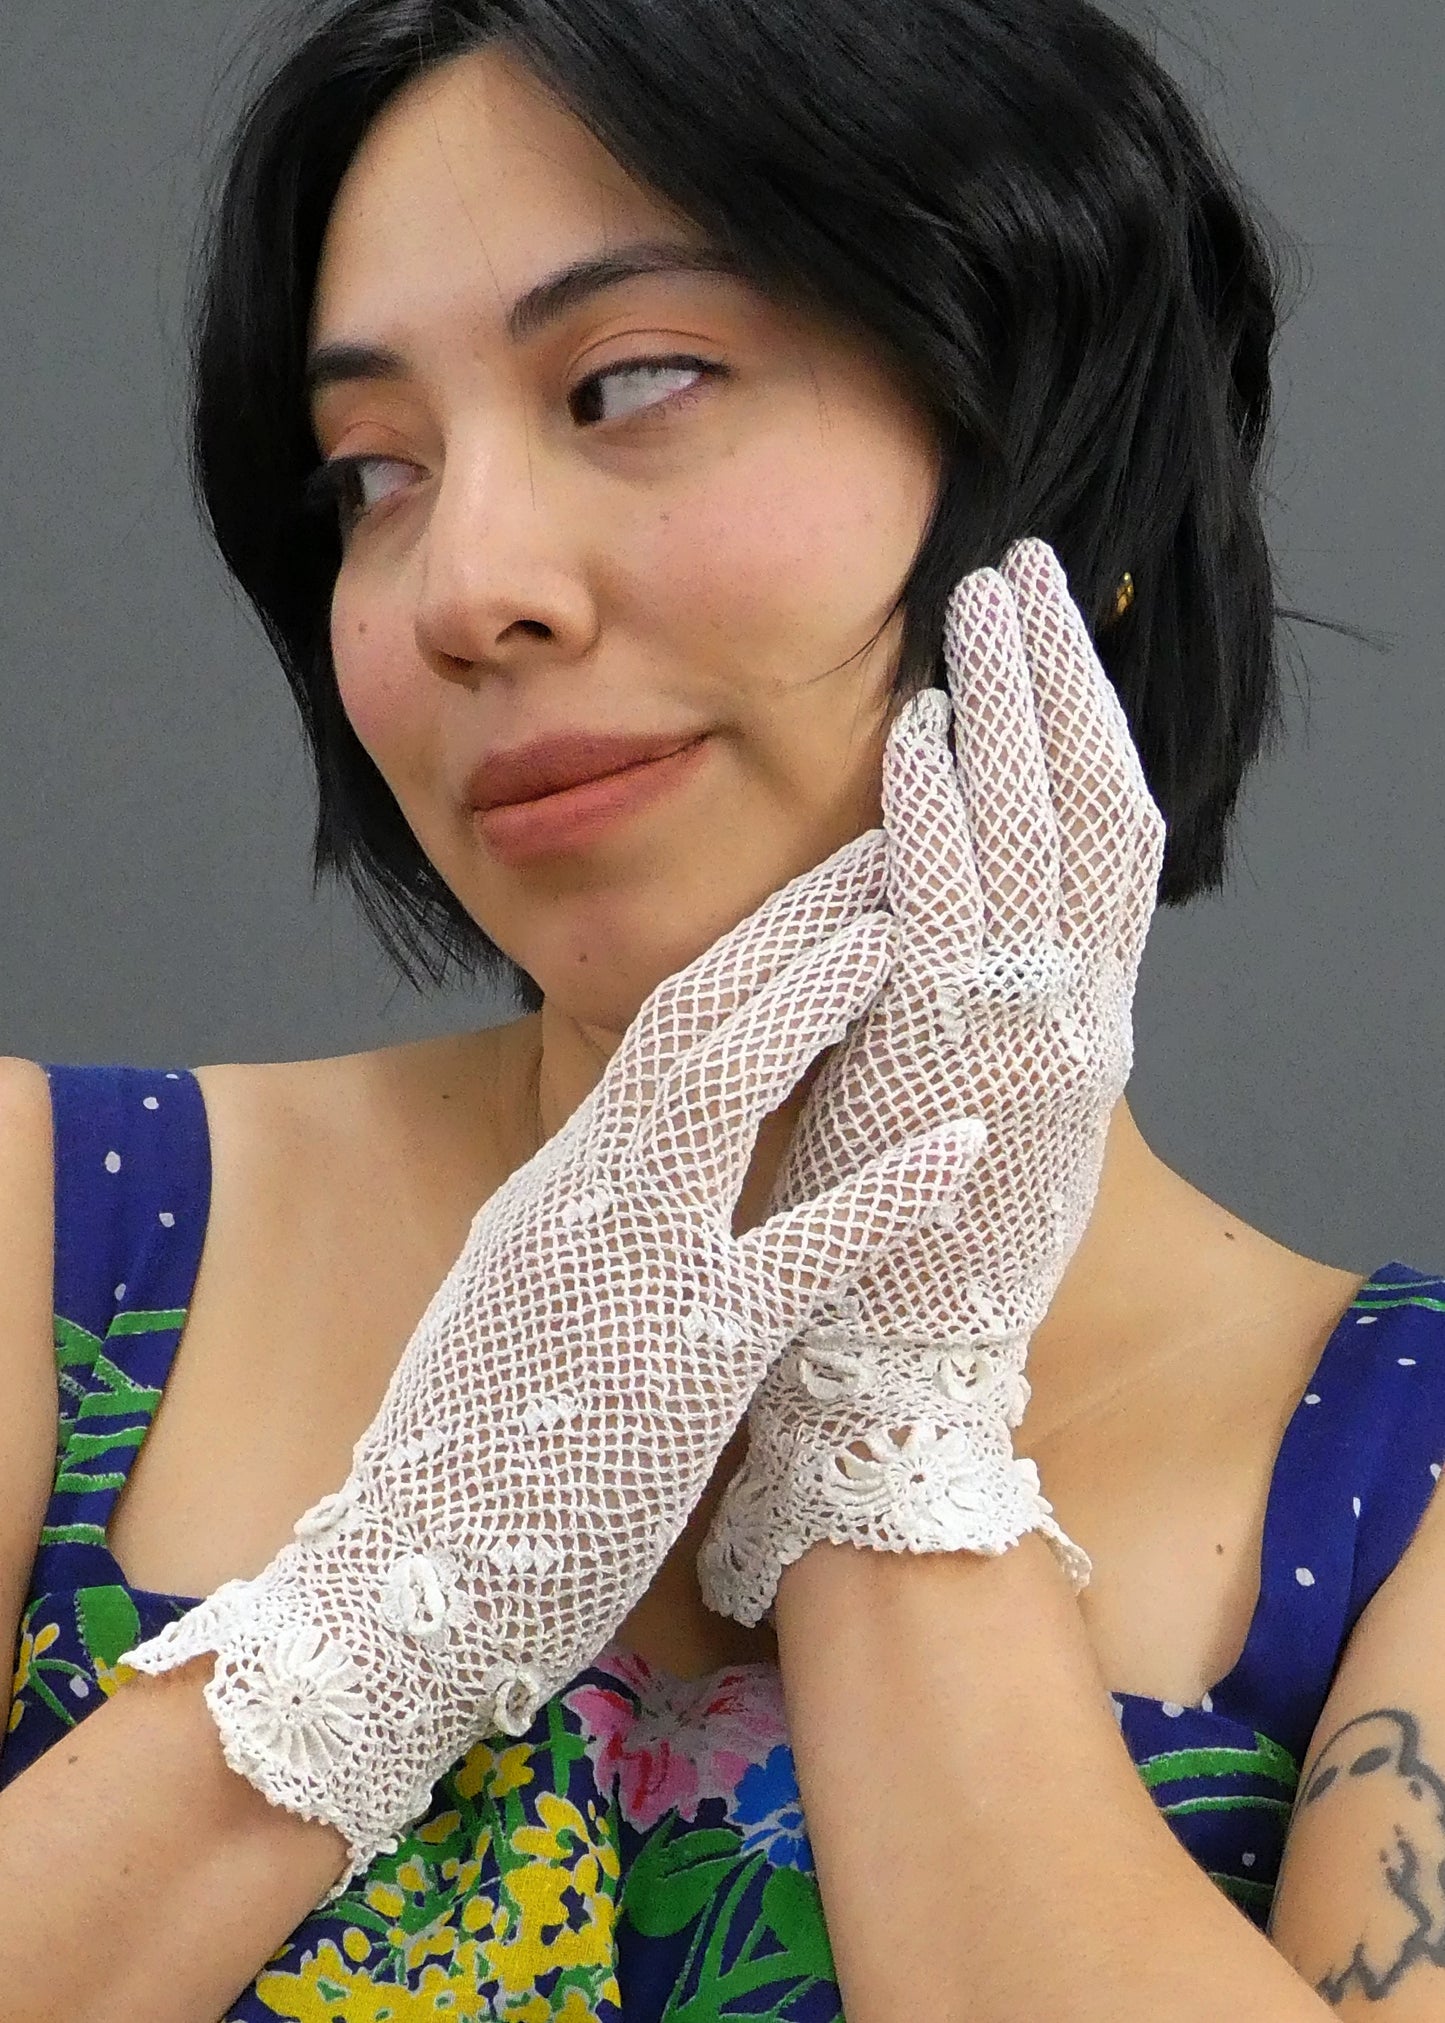 Ursula Gloves